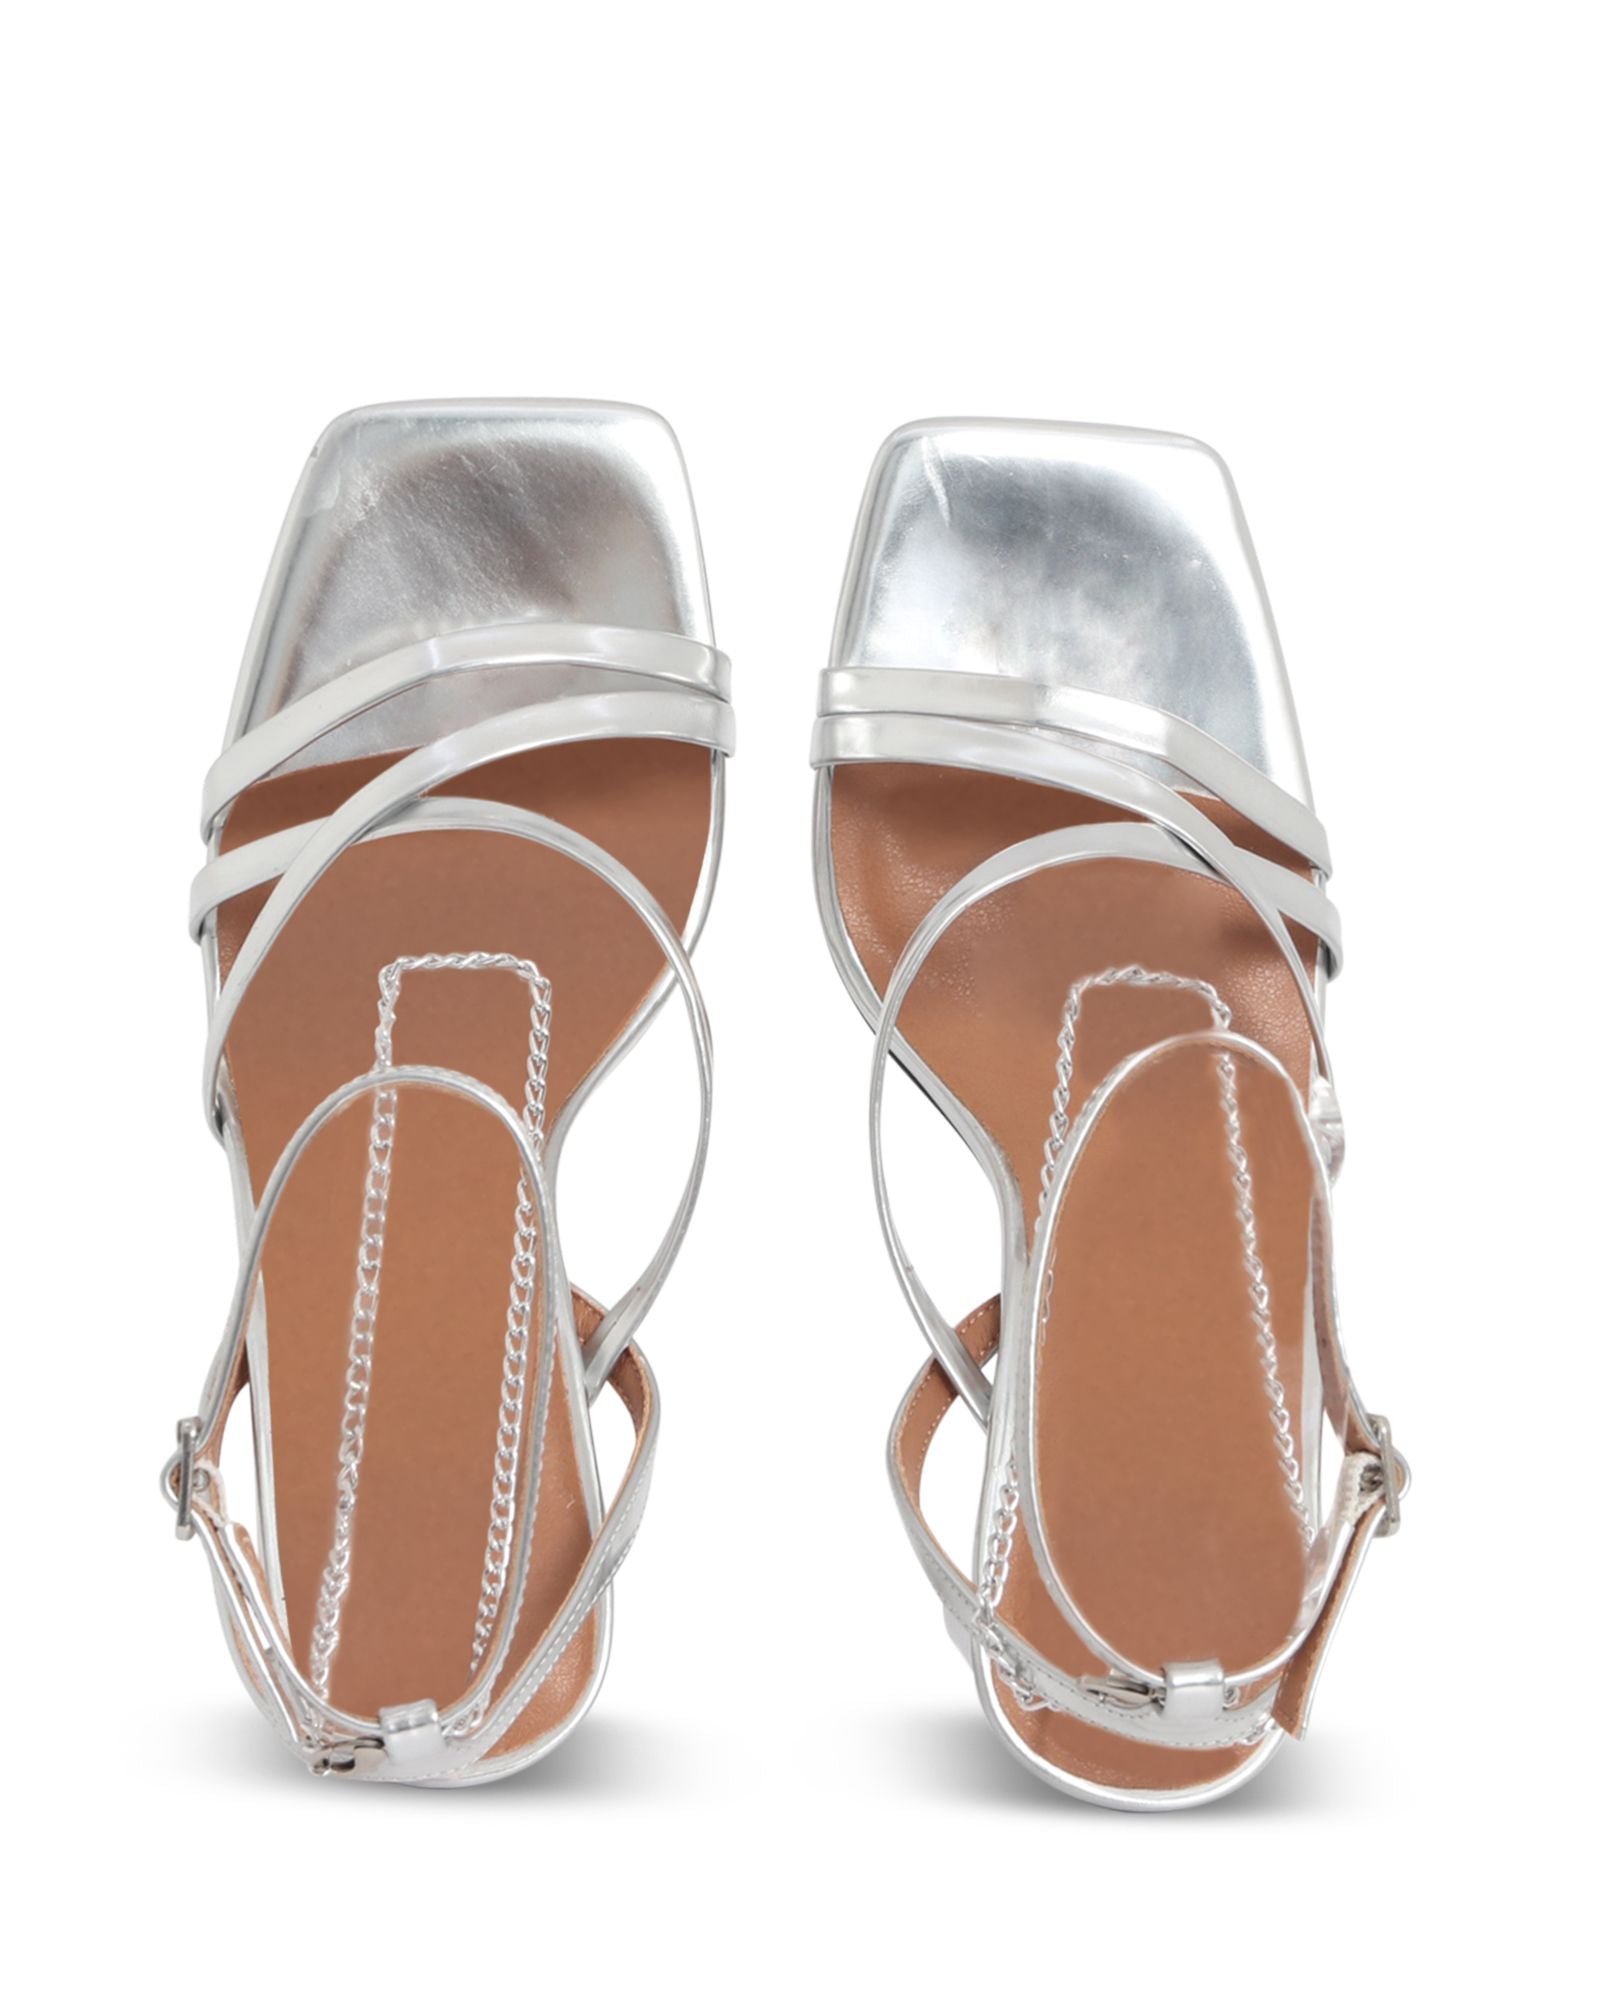 BELIZE STRAPPY HEEL - SKIN FOOTWEAR - 36, 37, 38, 39, 40, 41, BF, BLACK, SILVER, womens footwear - Stomp Shoes Darwin